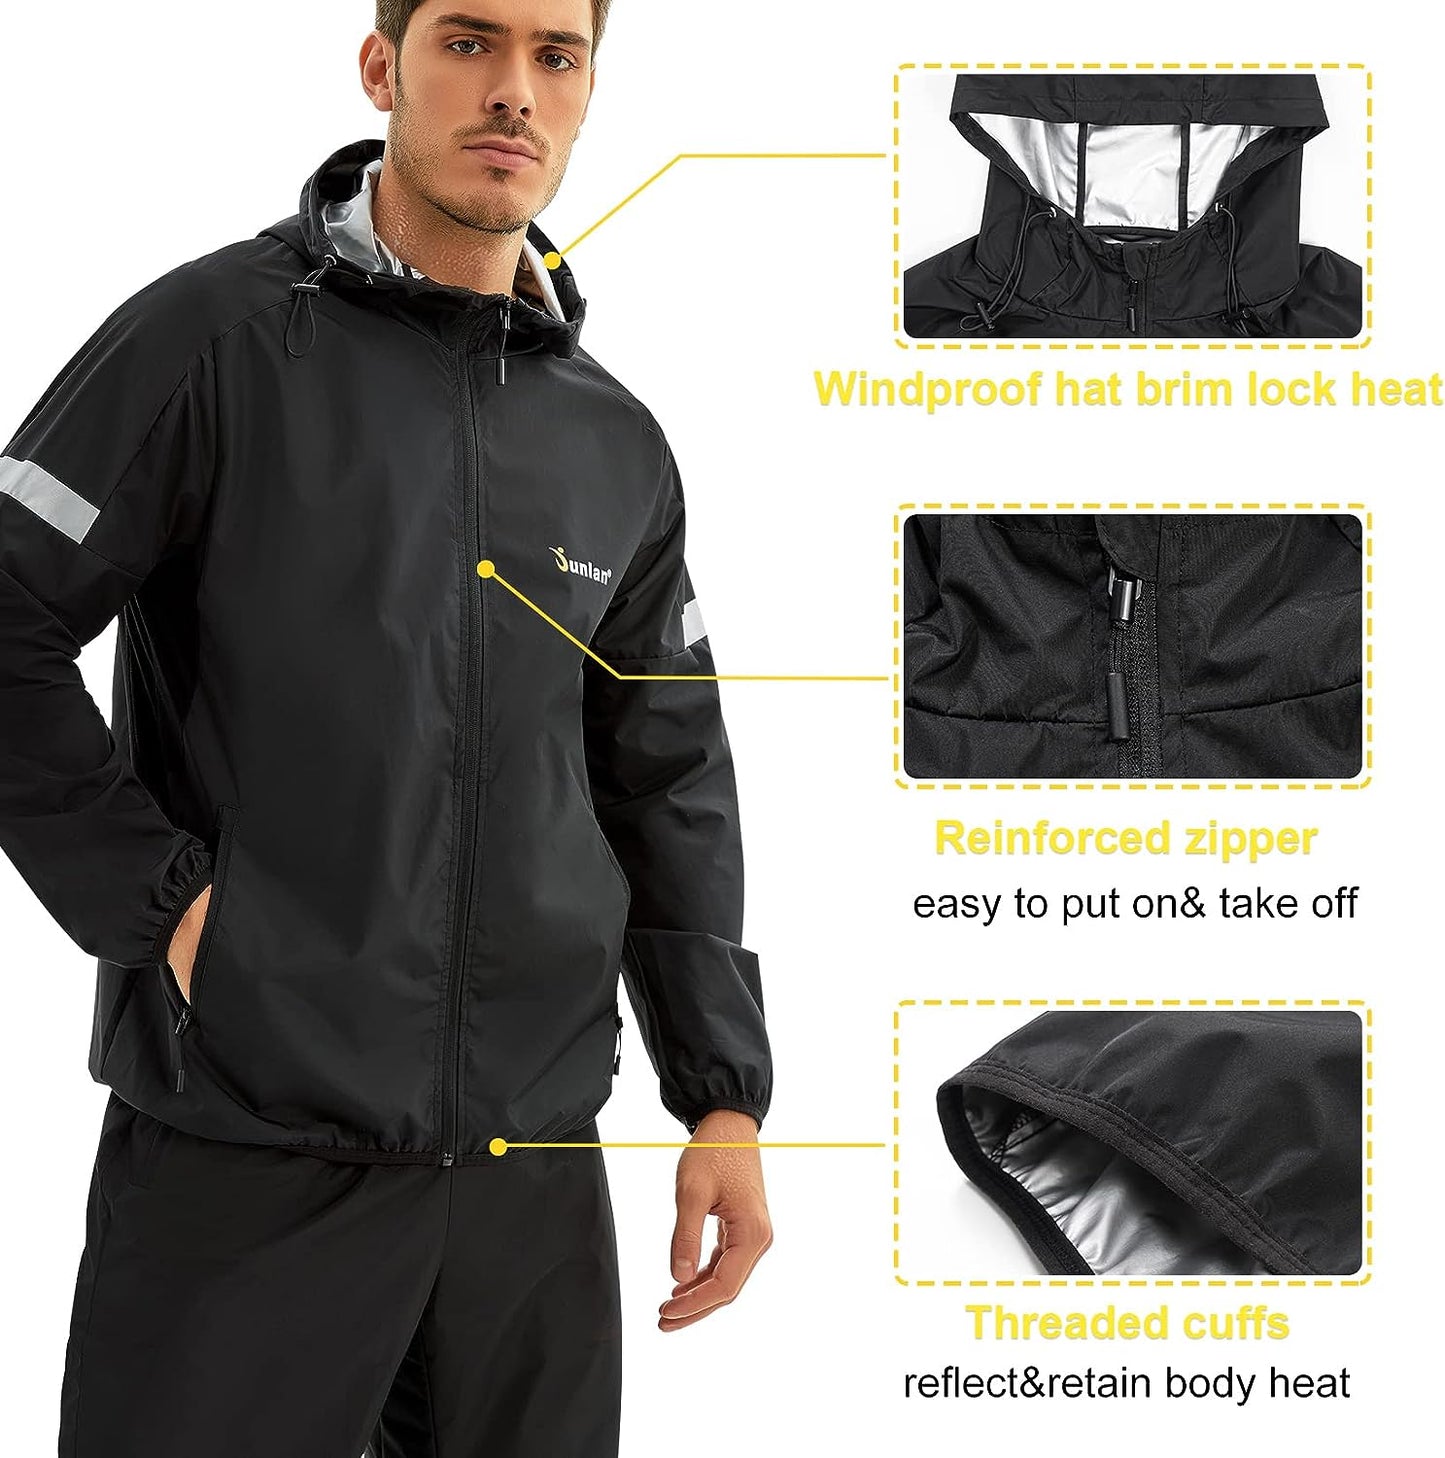 BEST Junlan Sauna Suit for Men Sweat Jacket for Men Sweat Sauna Pants Gym Workout Sweat Suit